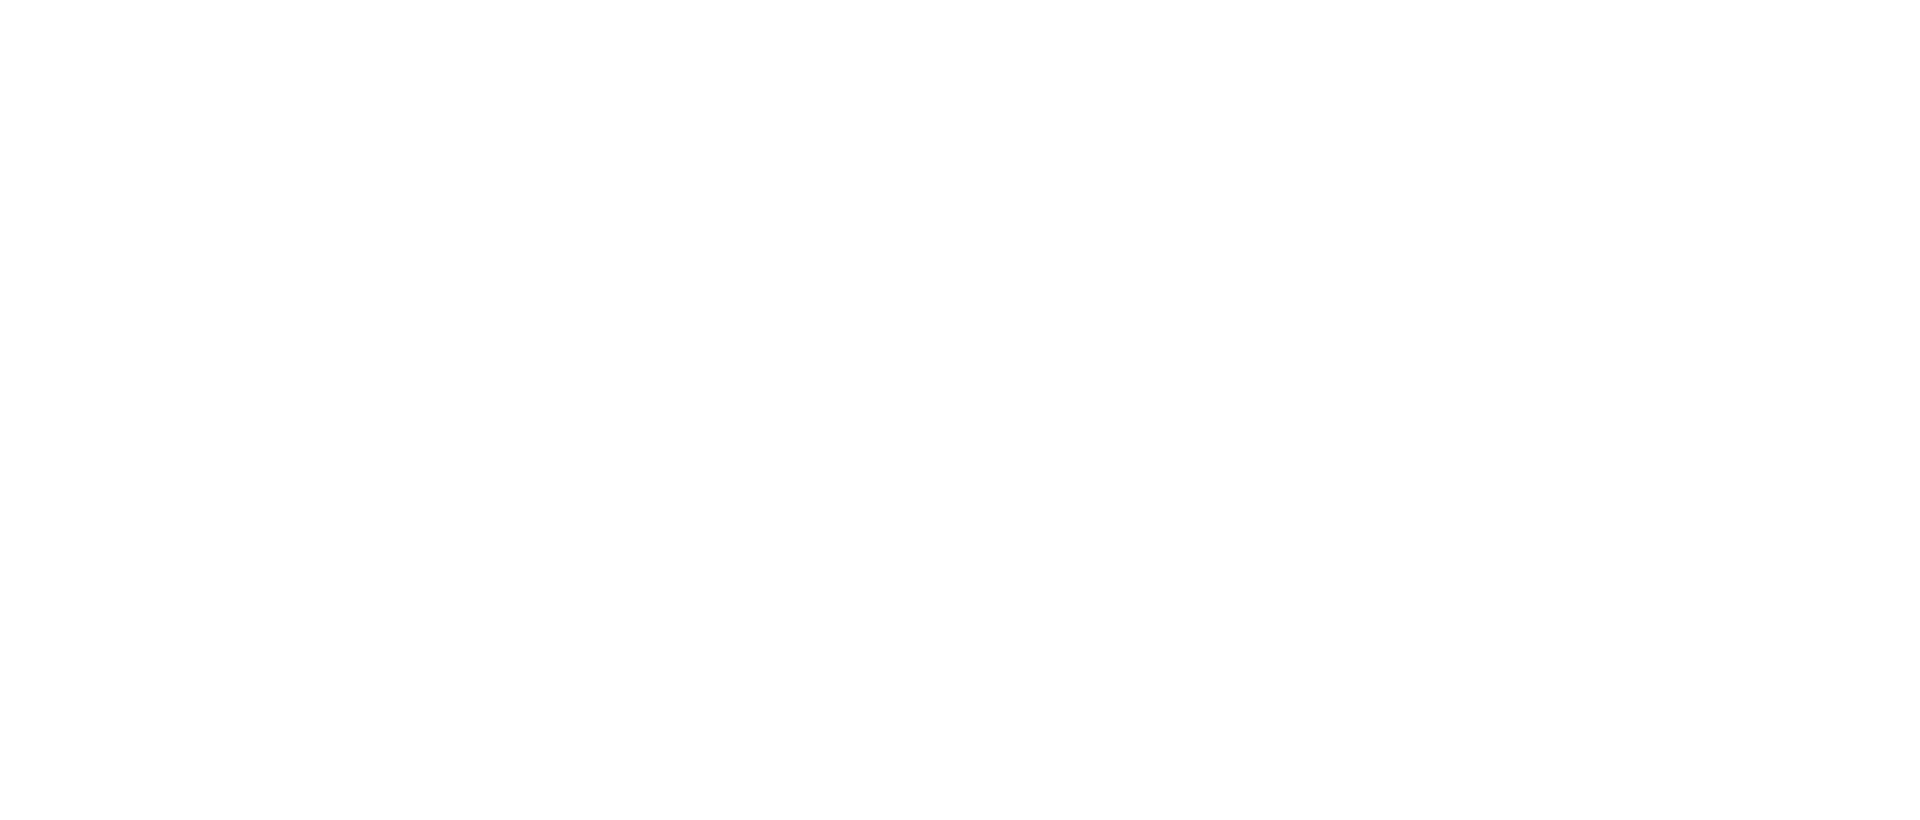 McNamara Real Estate logo